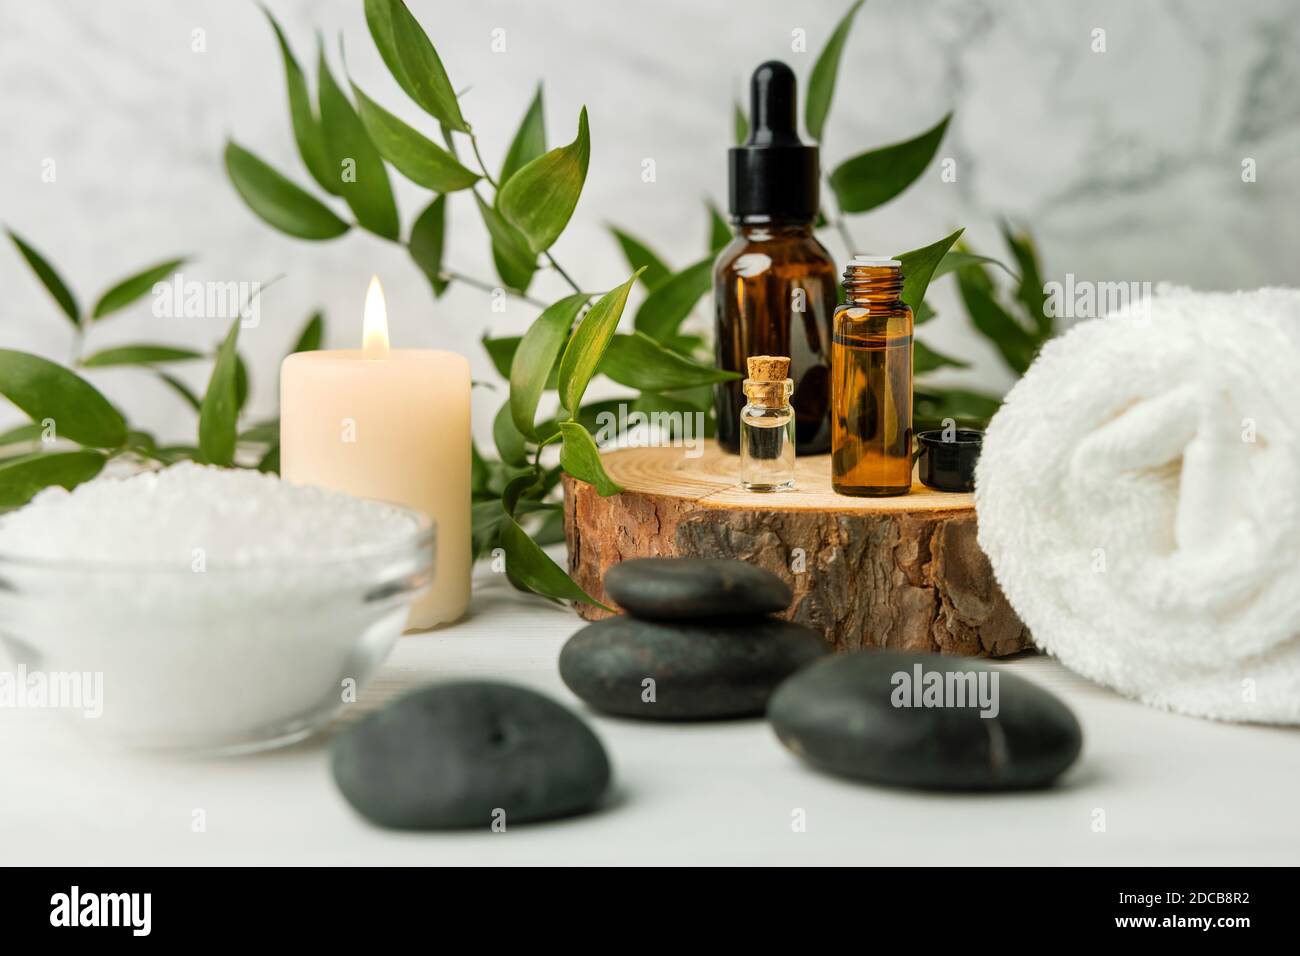 Schönheitsbehandlungen für Spa-Behandlungen auf weißem Holztisch mit grüner Pflanze. Massagesteine, ätherische Öle und Meersalz mit brennender Kerze Stockfoto